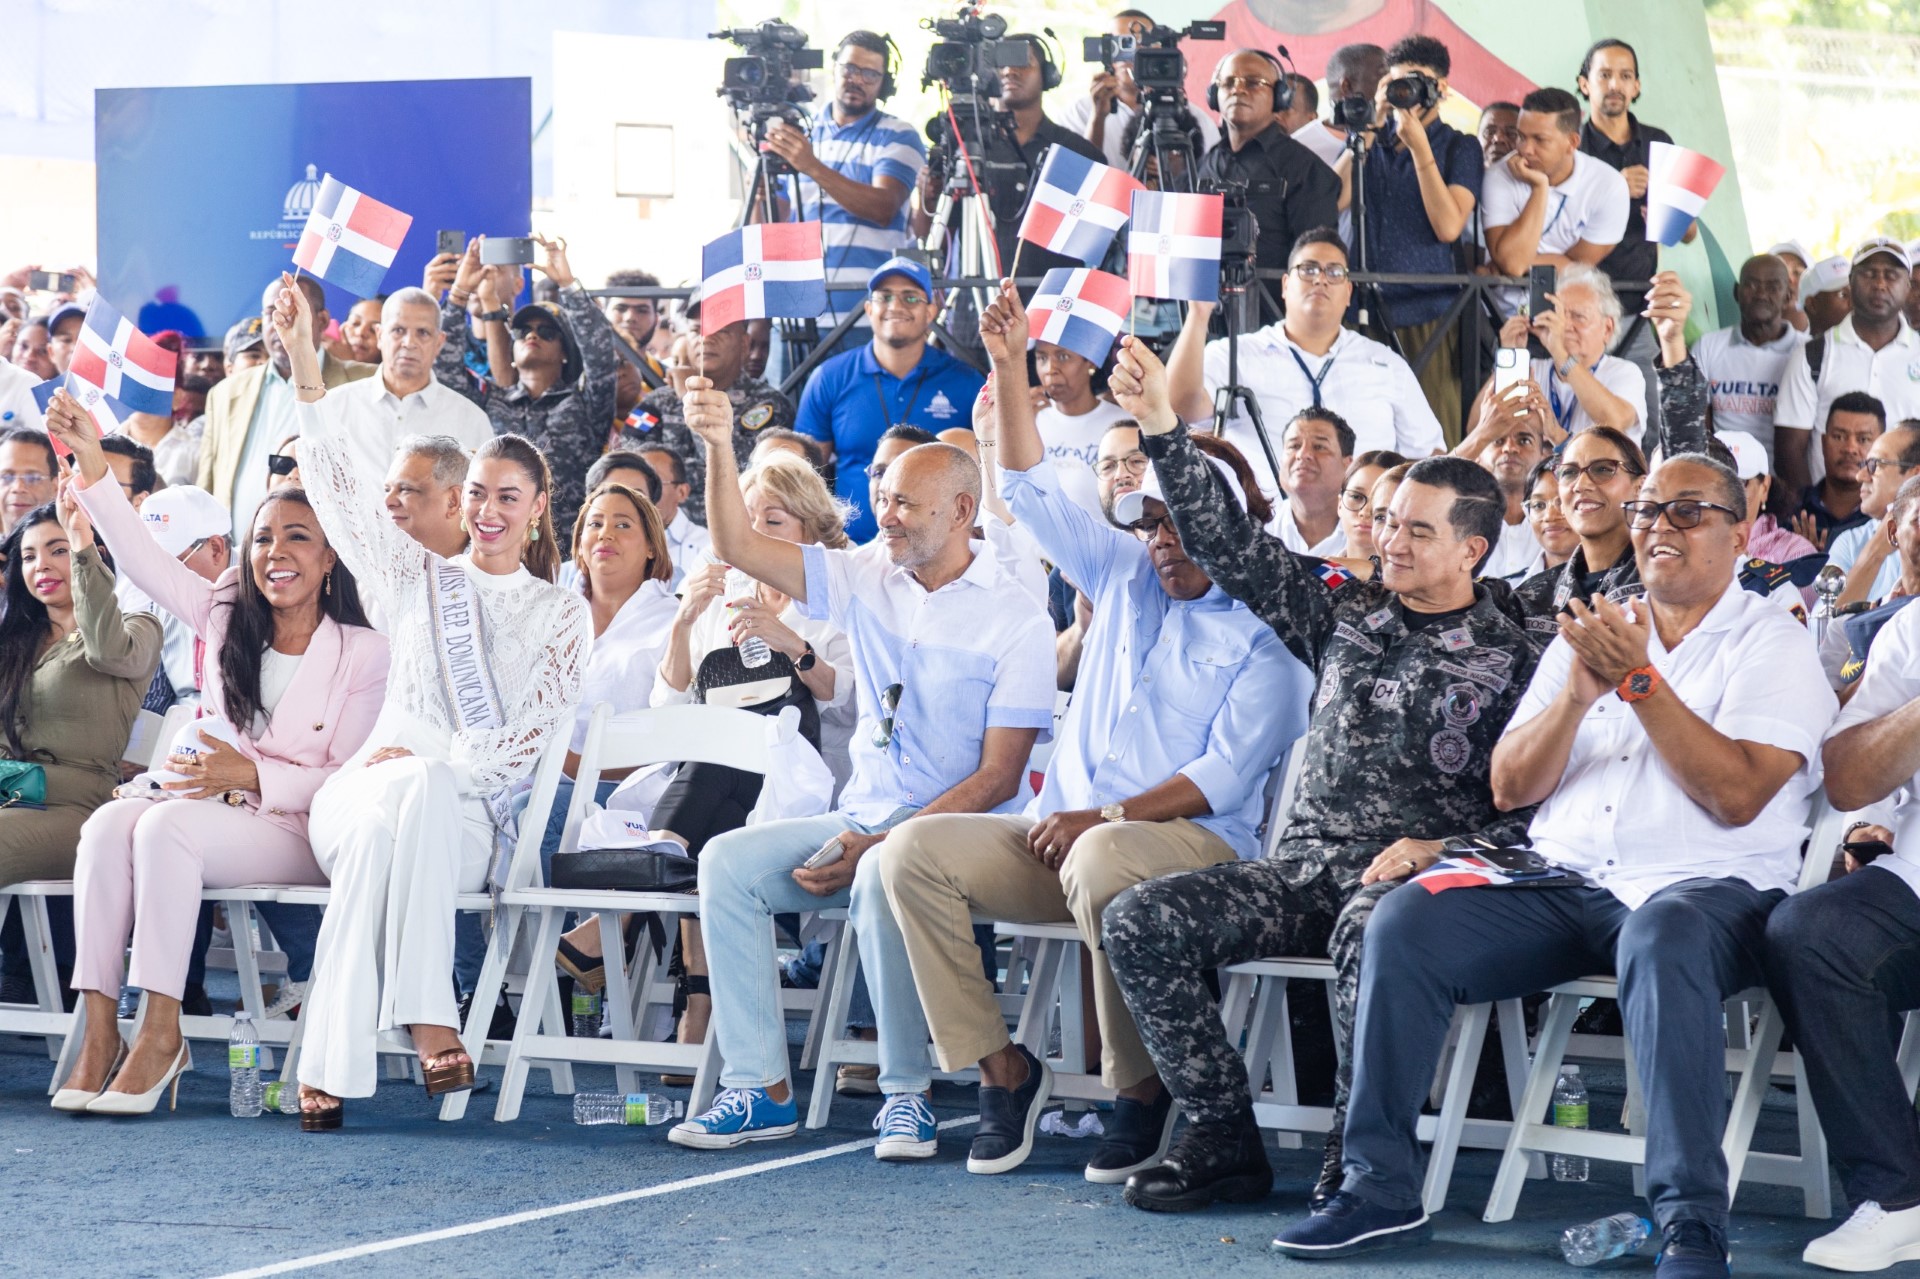 Personalidades del deporte, arte y cultura apoyan programa “De Vuelta al Barrio” en Santo Domingo Oeste